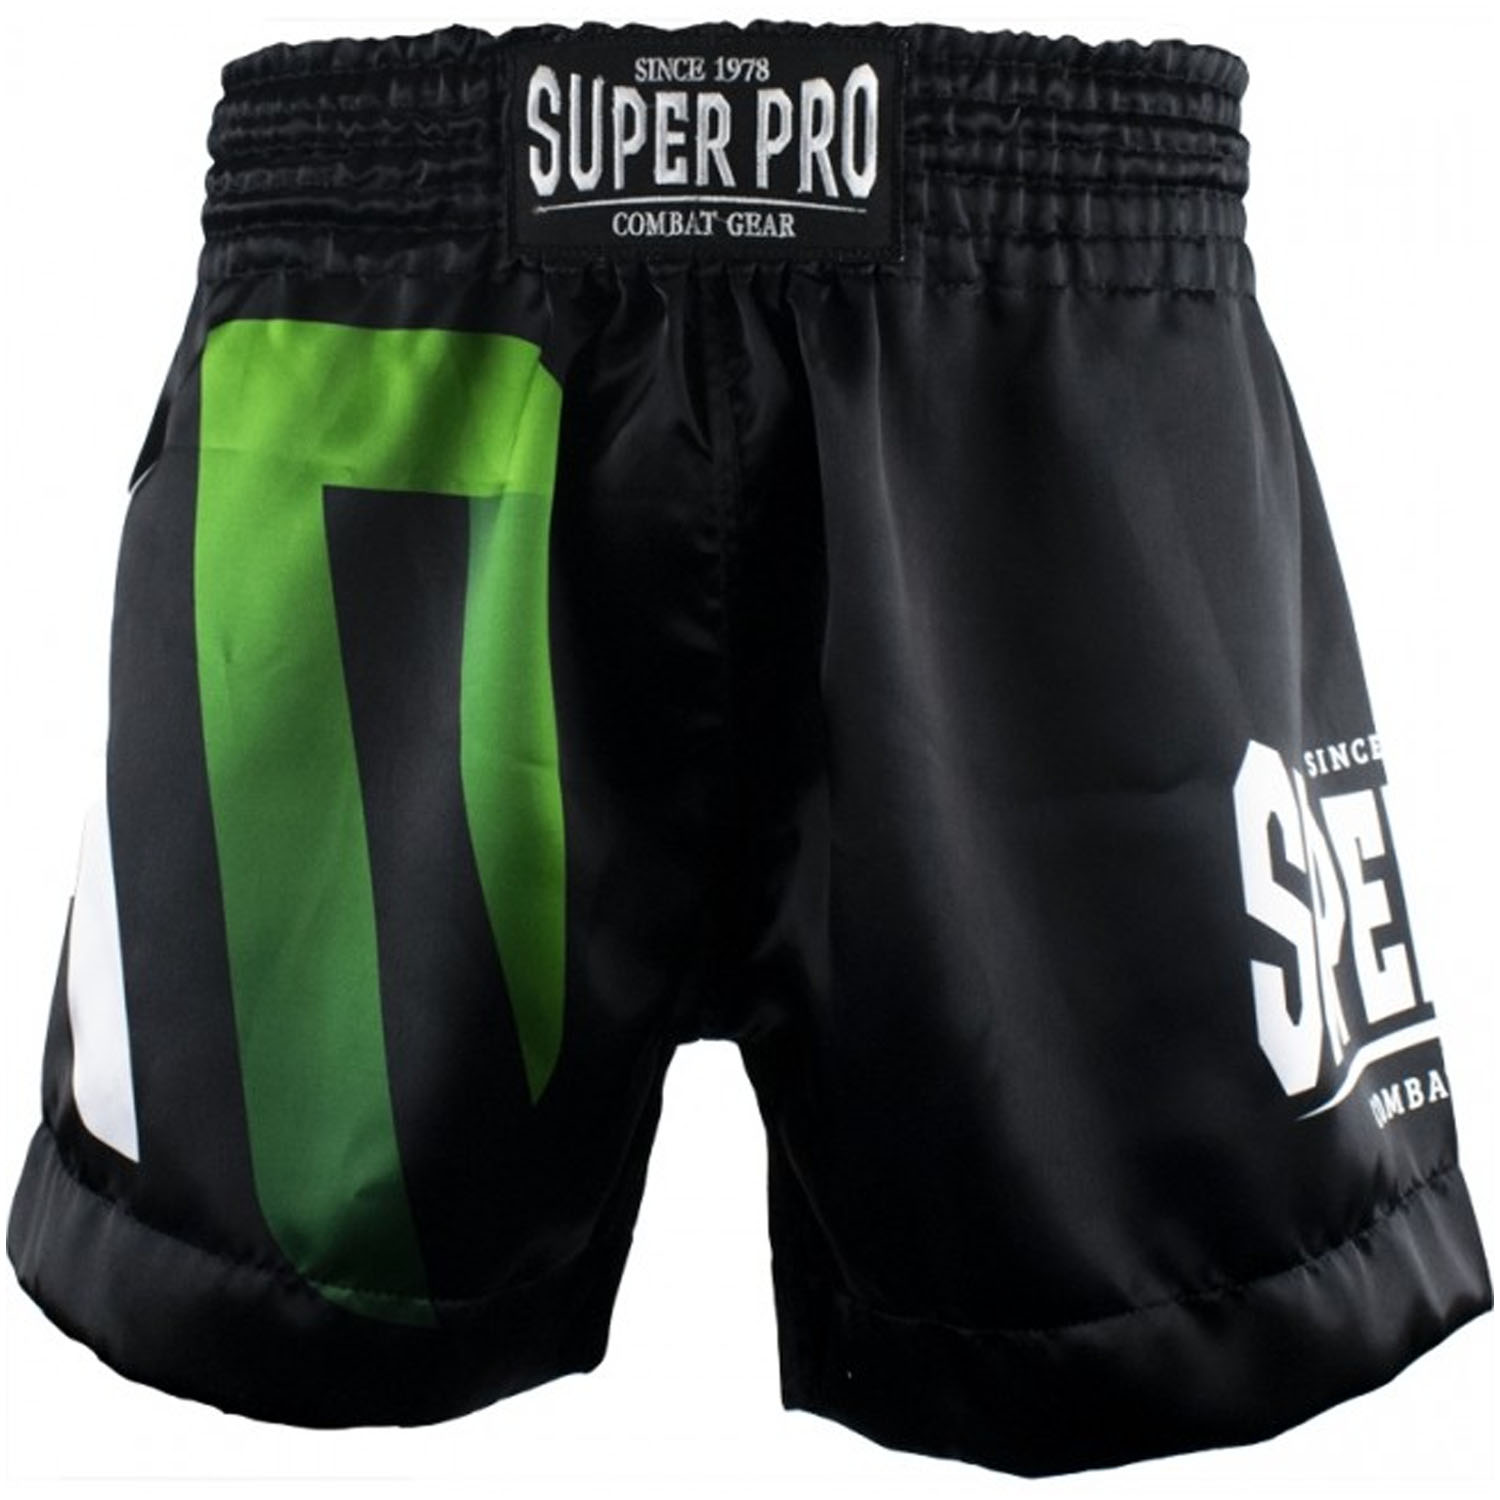 Super Pro Muay Thai Shorts, No Mercy, schwarz, M